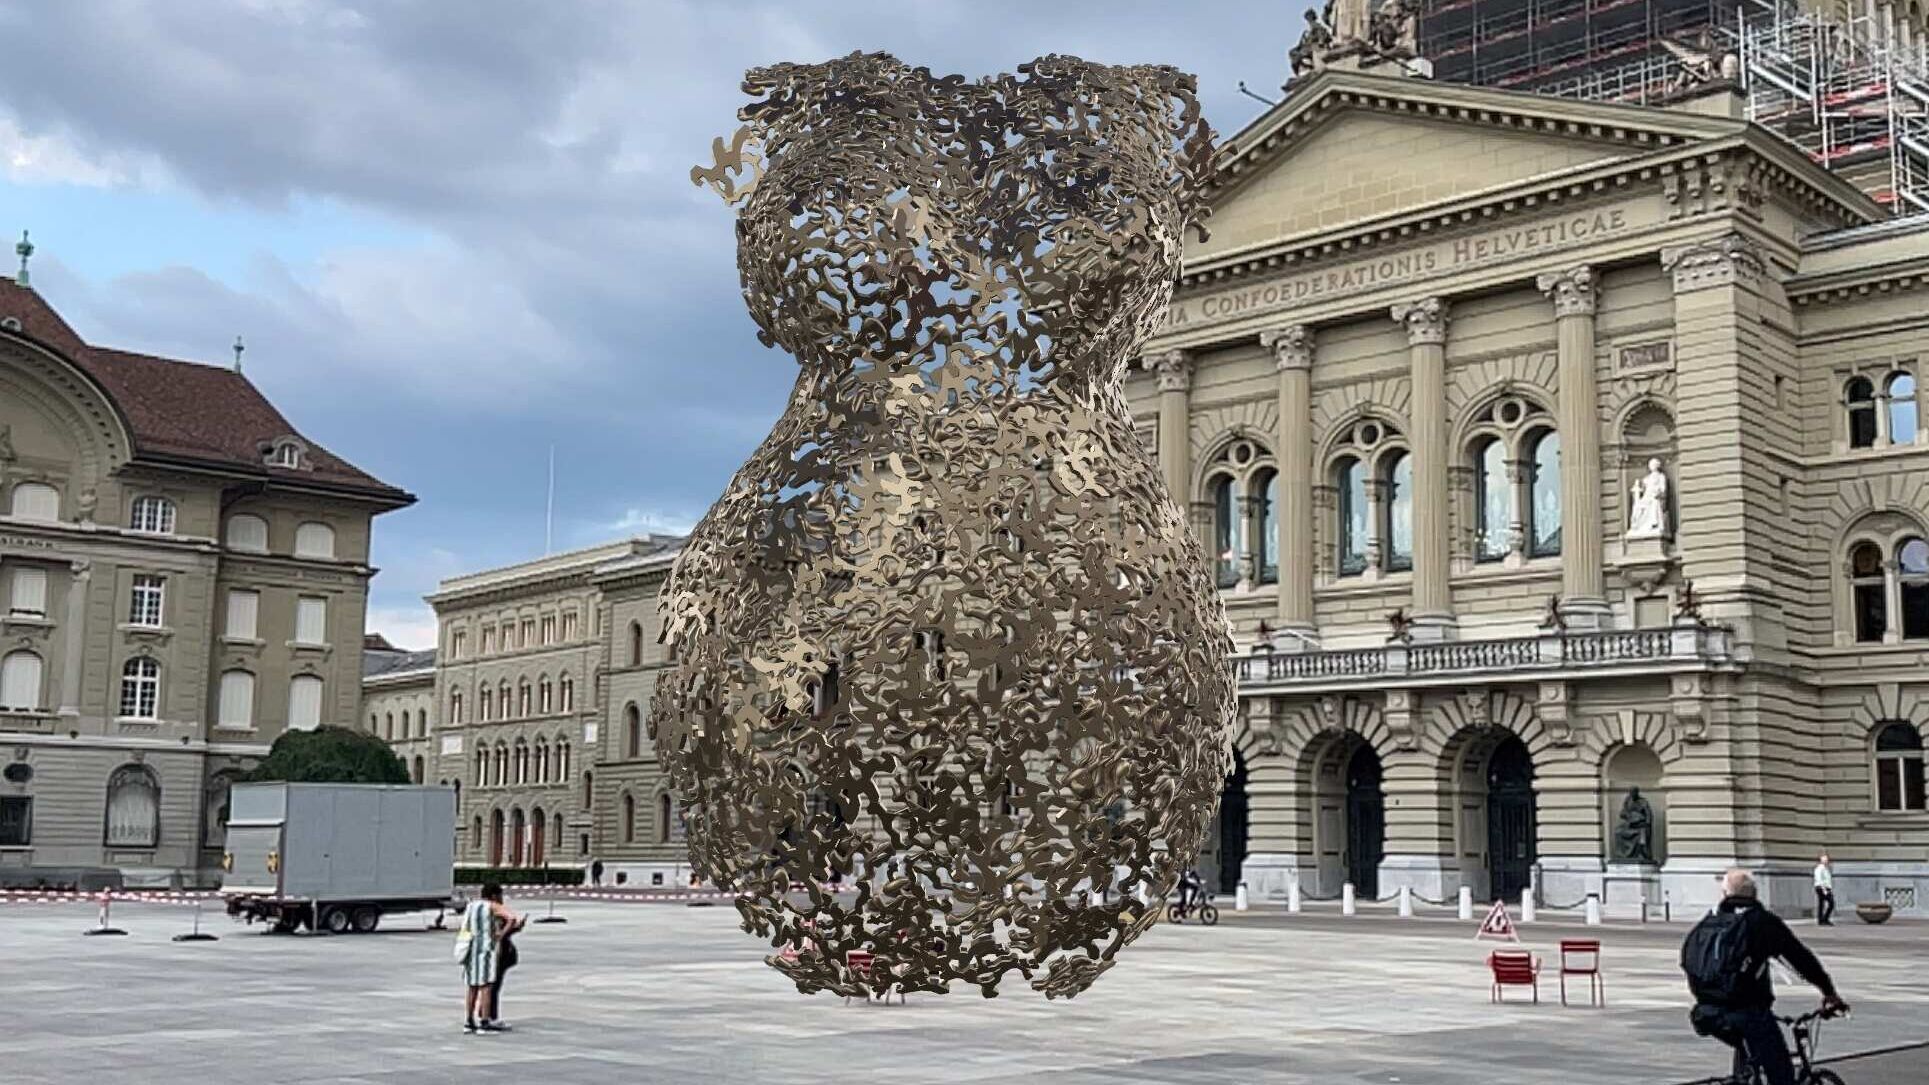 Realidade aumentada: escultura da artista Andrea Stahl em AR em frente ao Palácio Federal de Berna